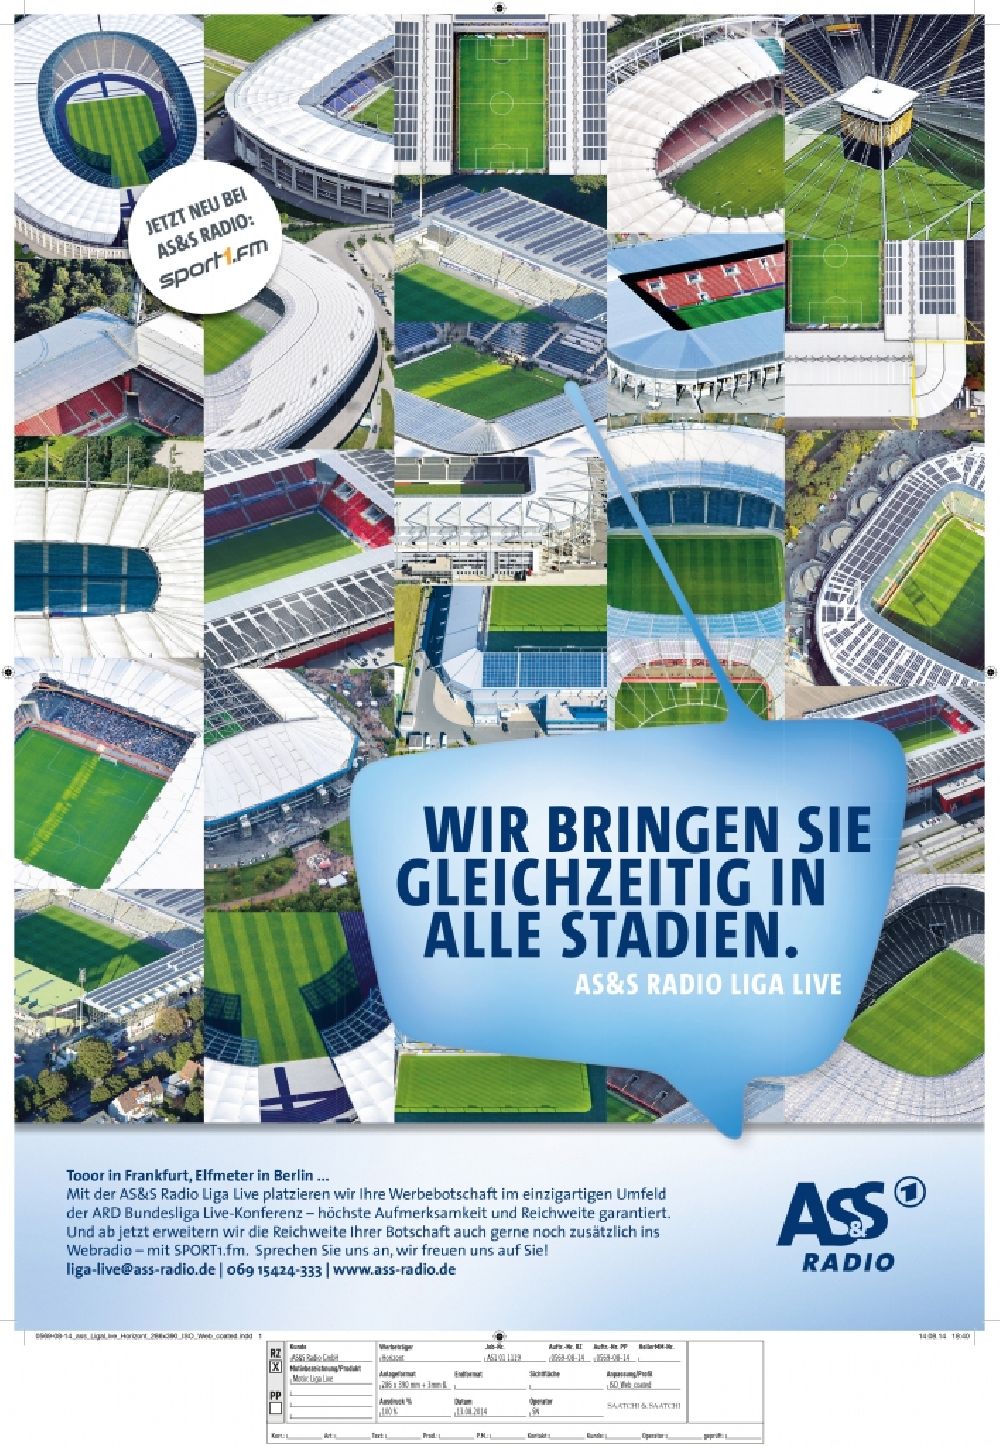 Aerial image Berlin - 1. Bundesliga Deutschland Fußball Stadien und Arenen - Belegausschnitt / Medienverwendung / Printverwendung für Anzeige und Werbung AS&S Radio GmbH der ARD in Horizont 13.08.2014